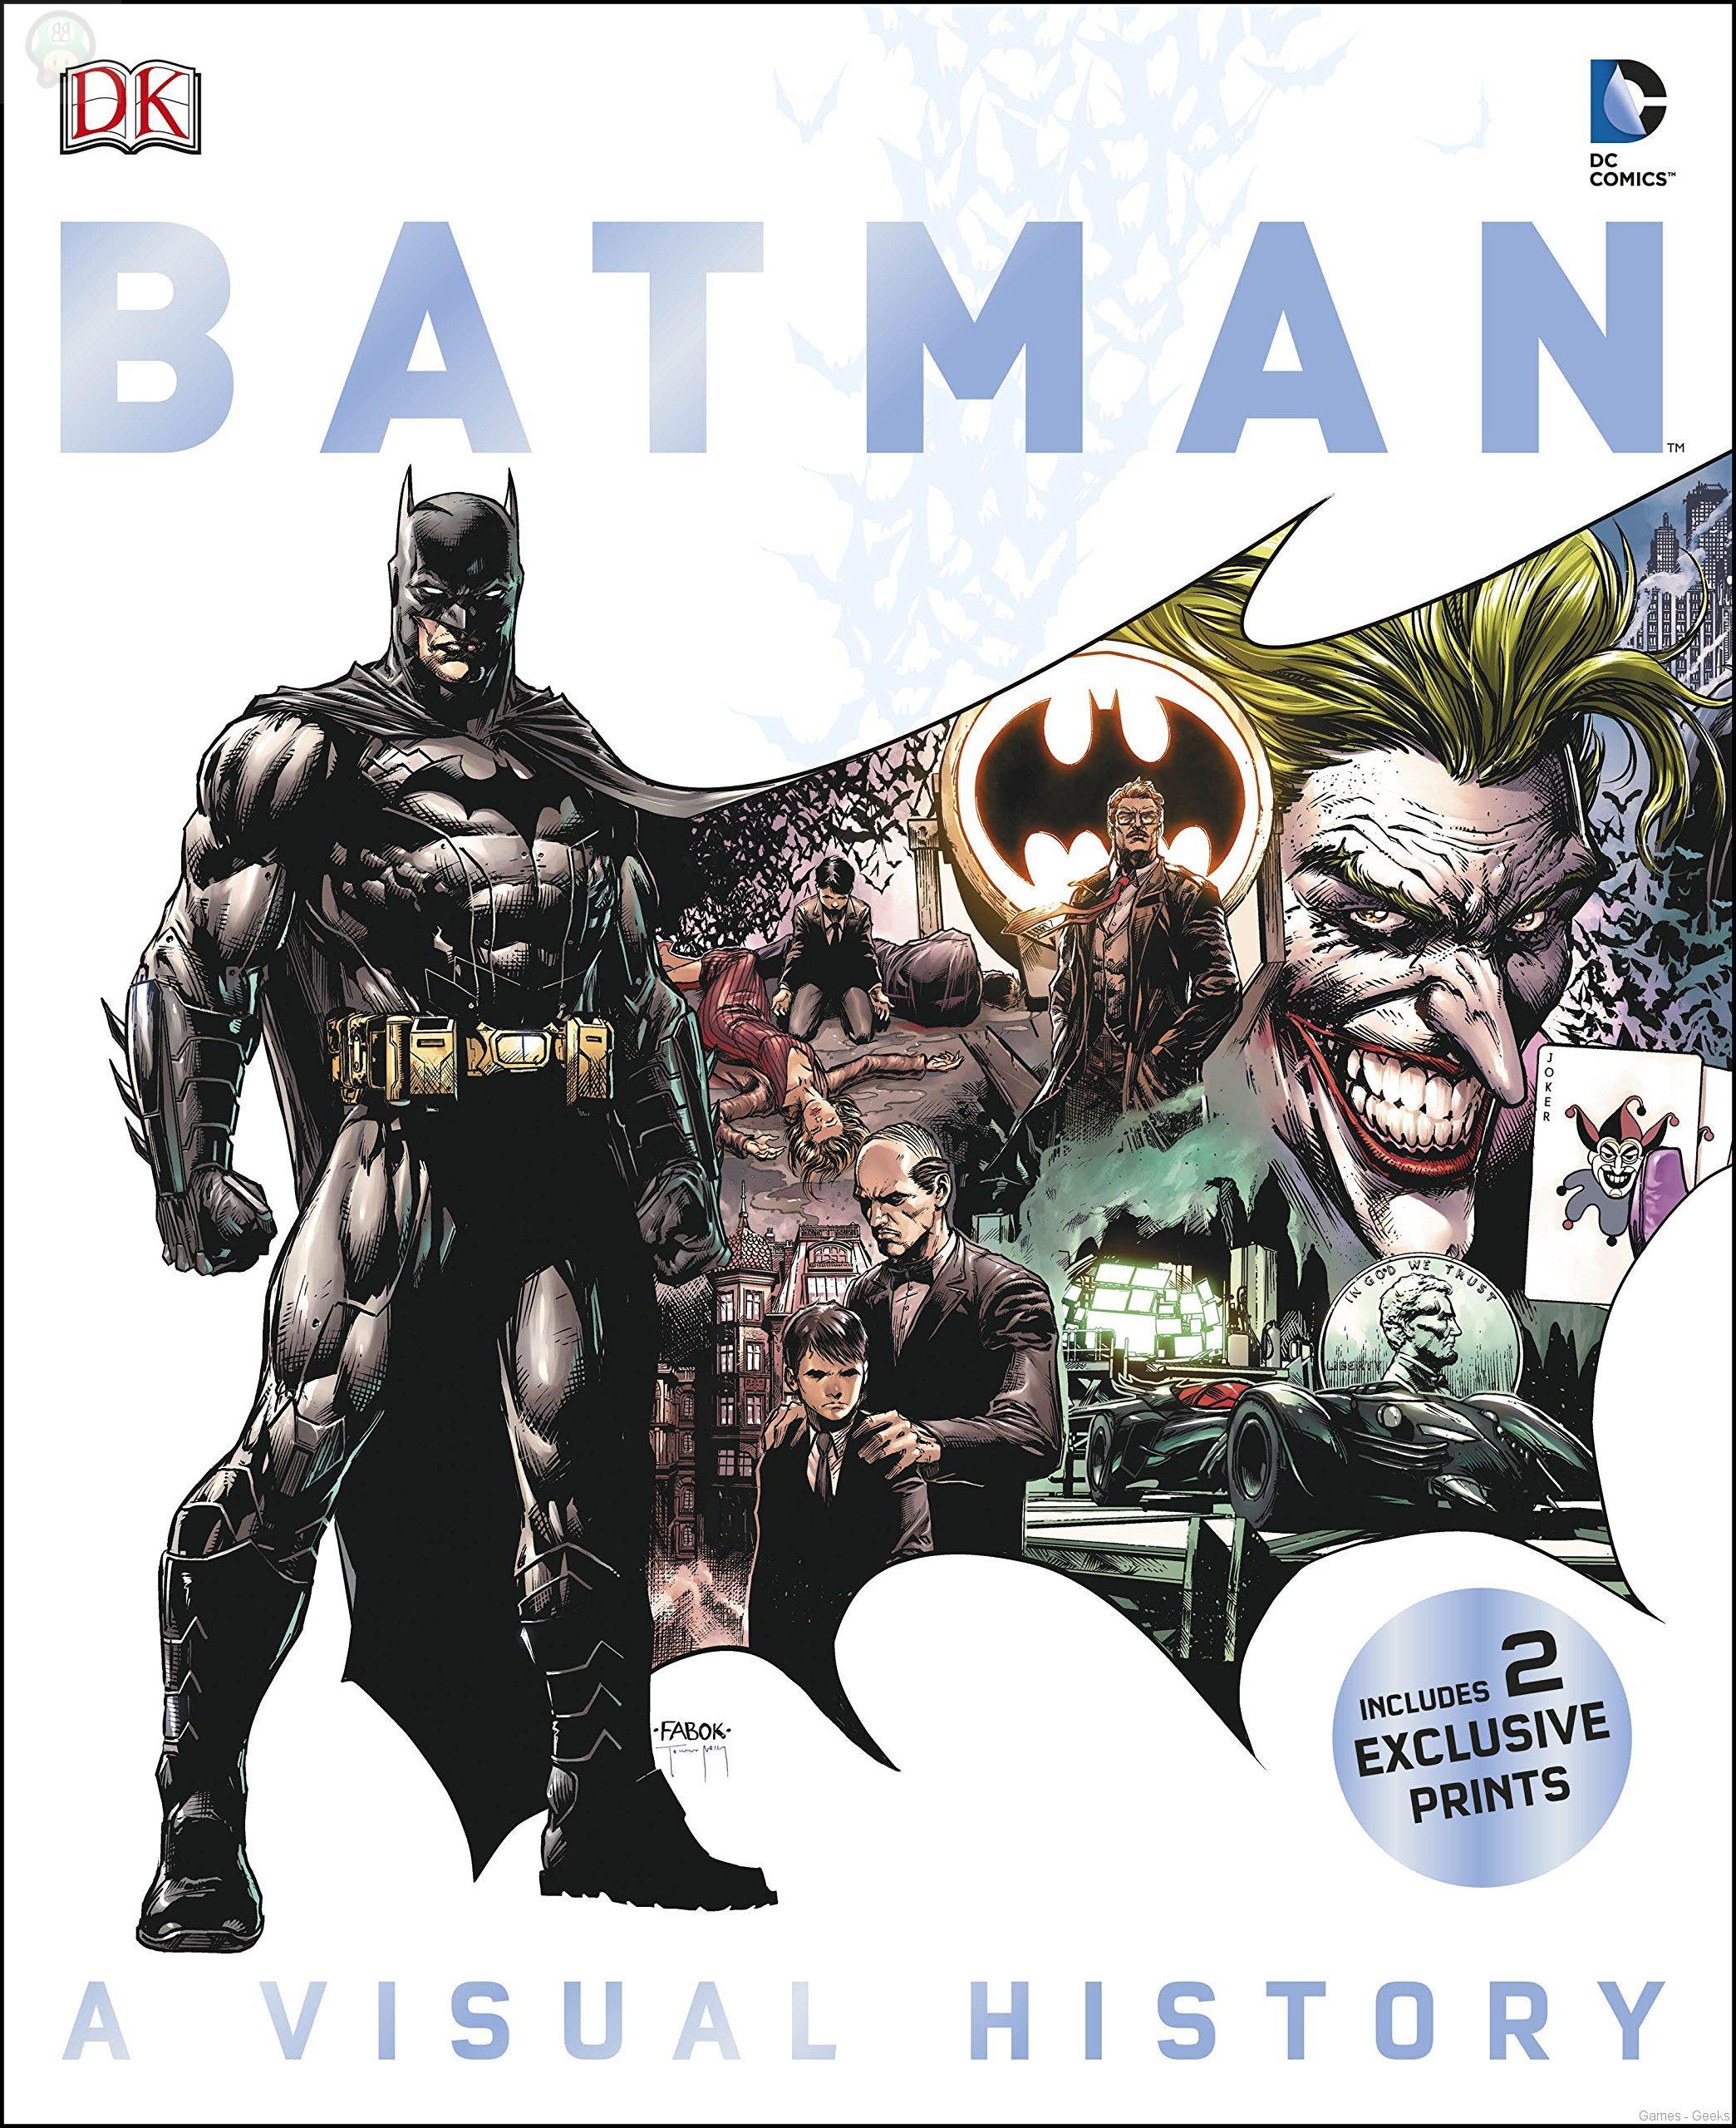 Livre : L’histoire de Batman